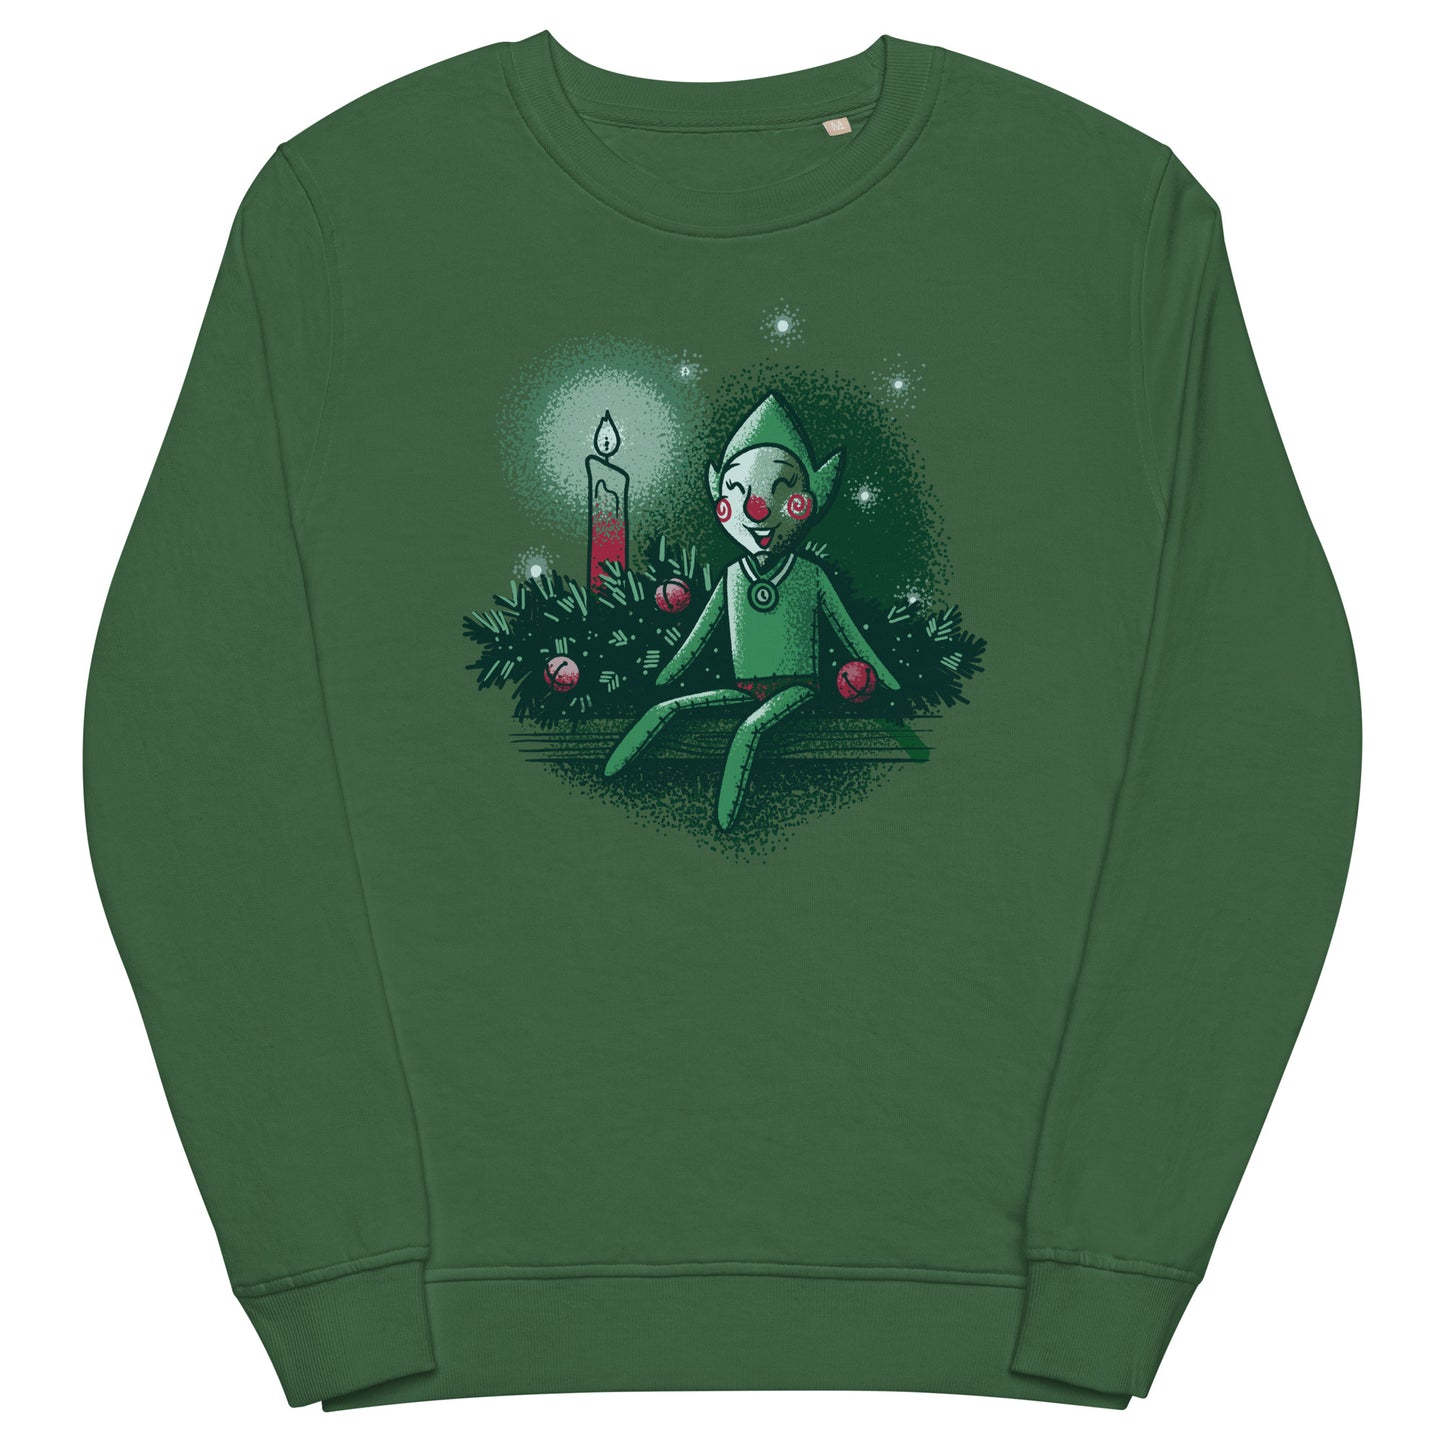 Tingle with a Jingle - Christmas Gaming T-Shirt